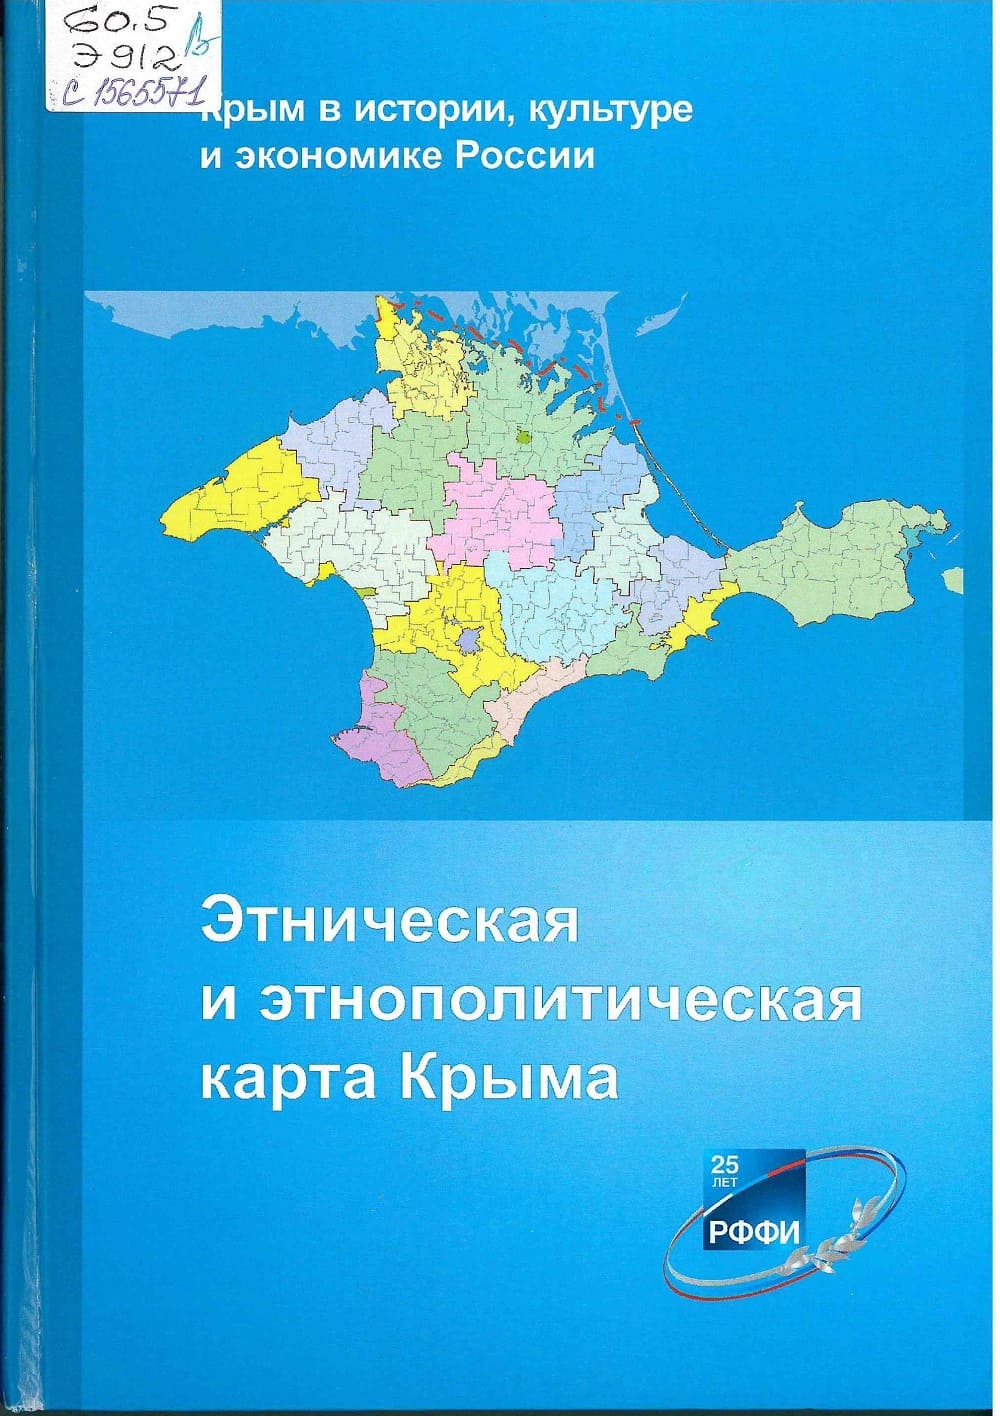 etnicheskaya karta kryma